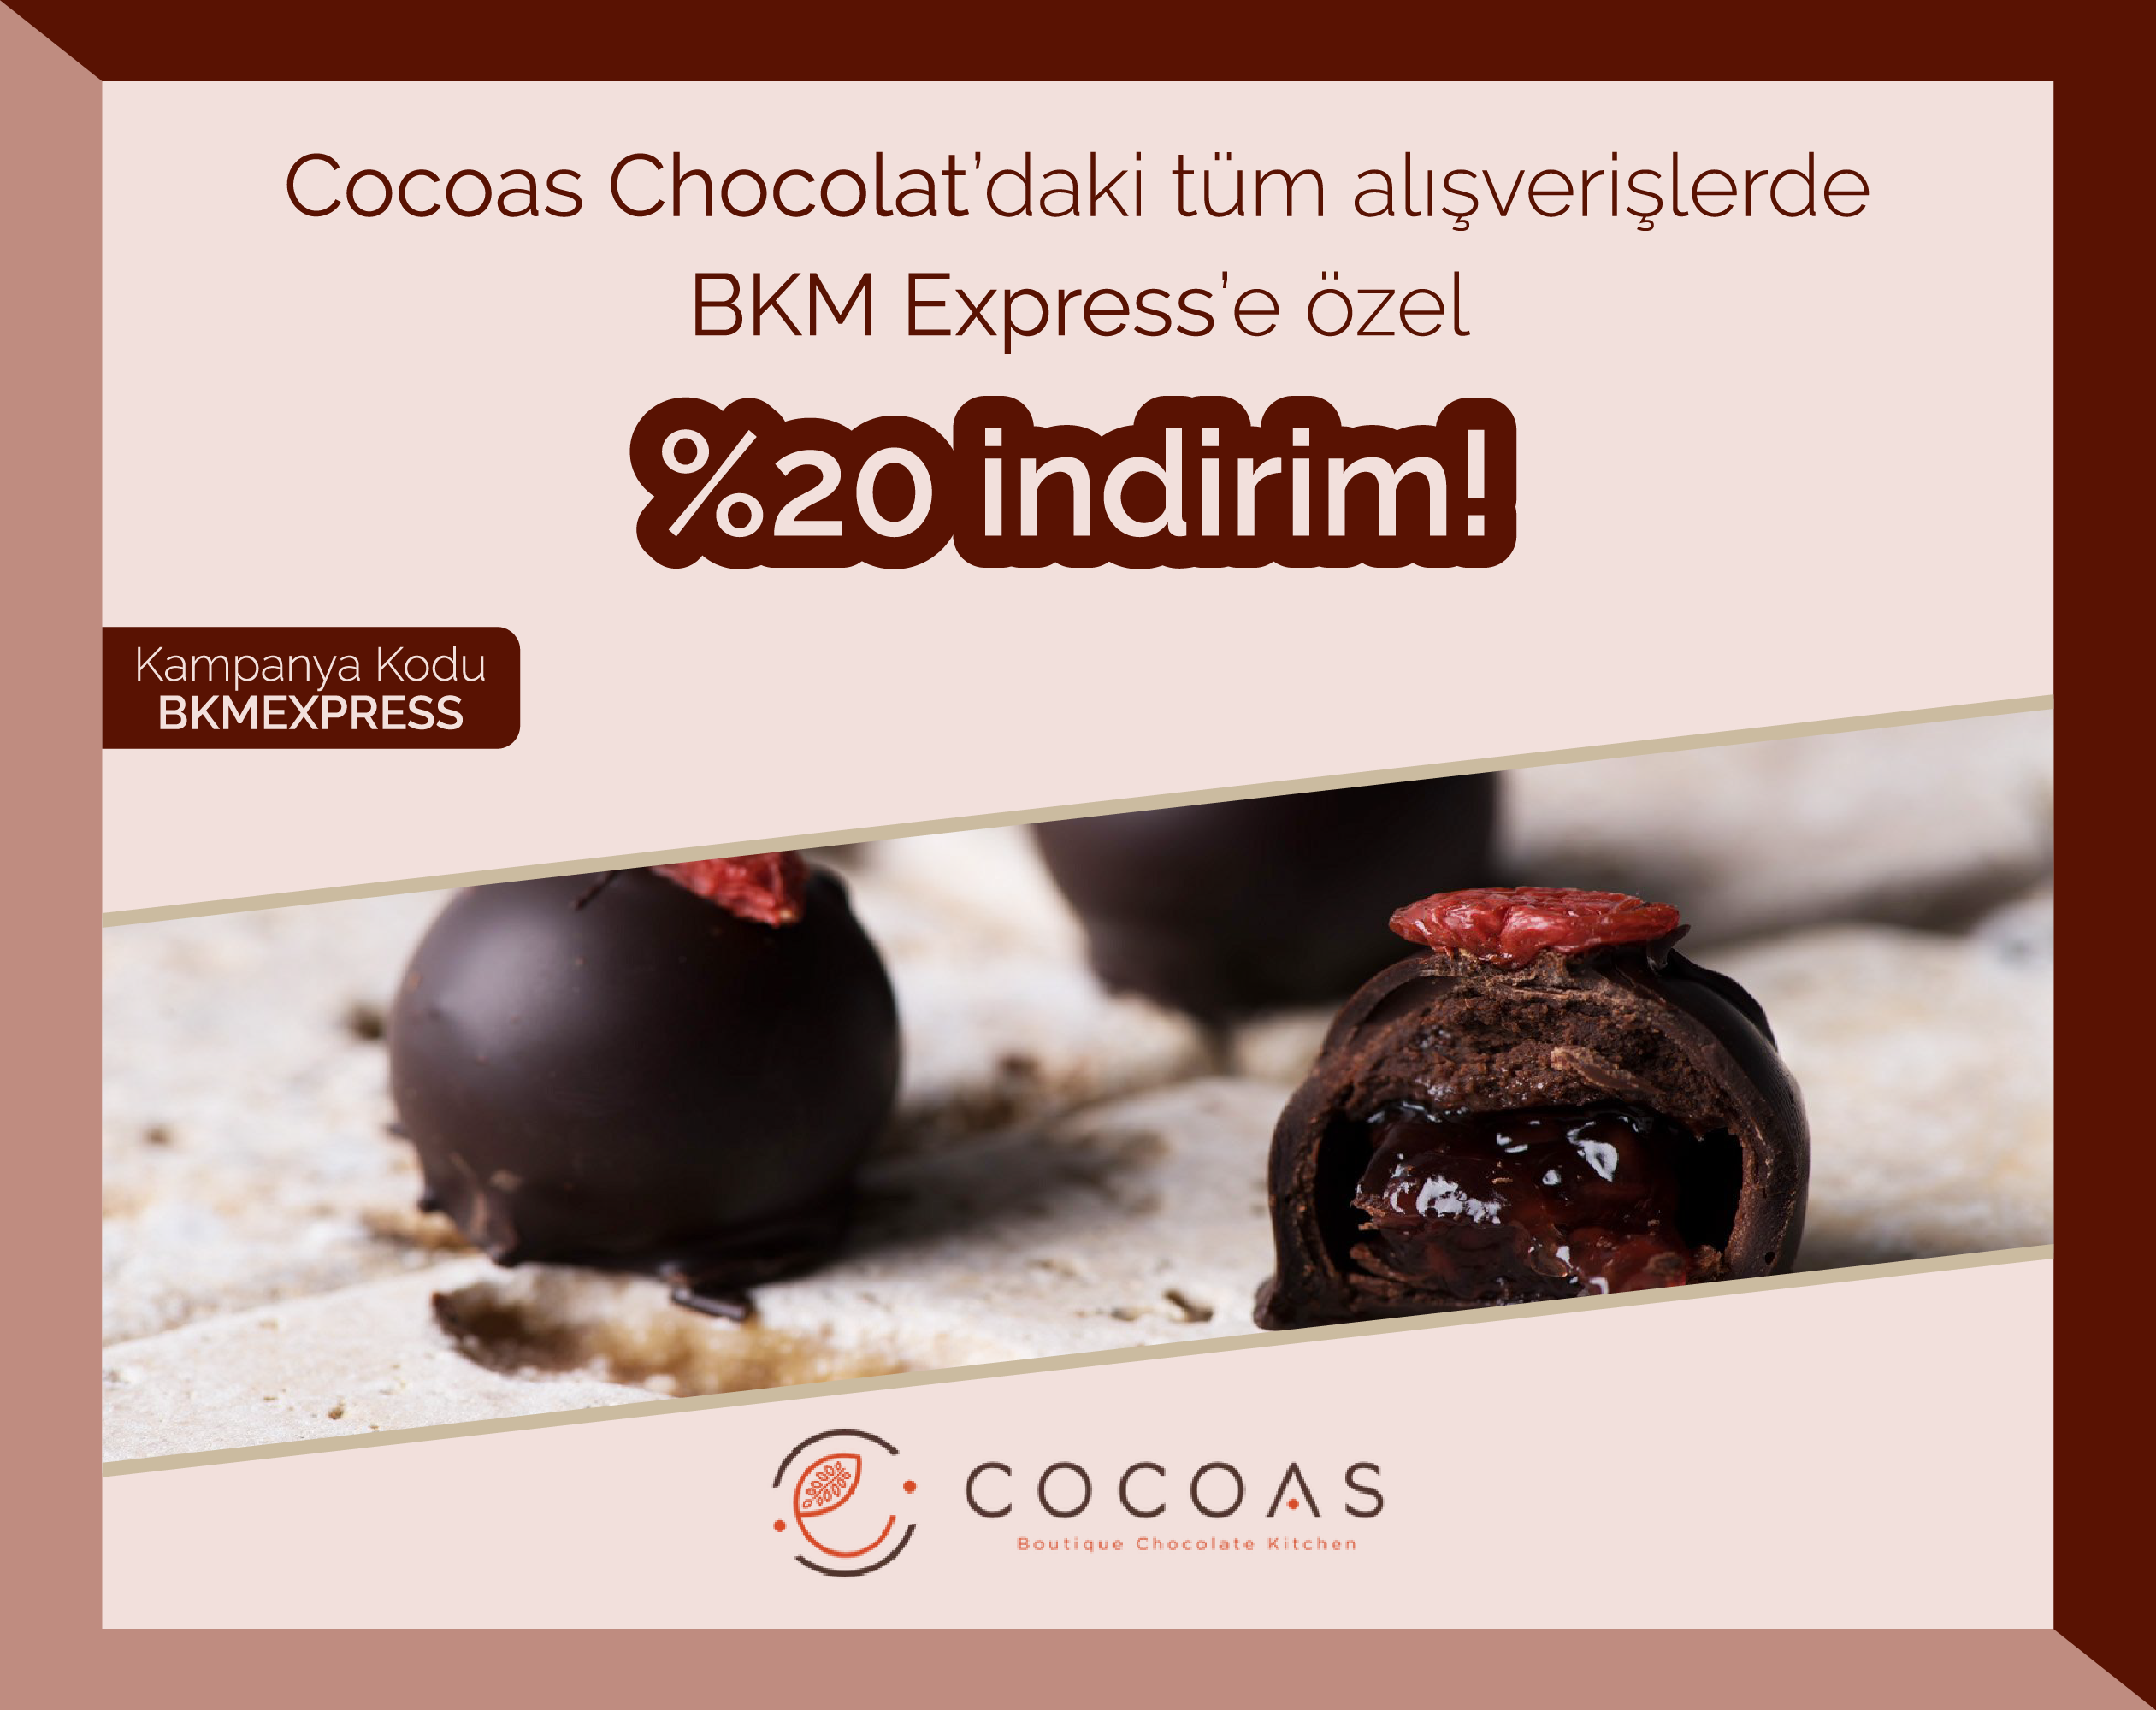 Cocoas Chocolat'da %20 indirim!